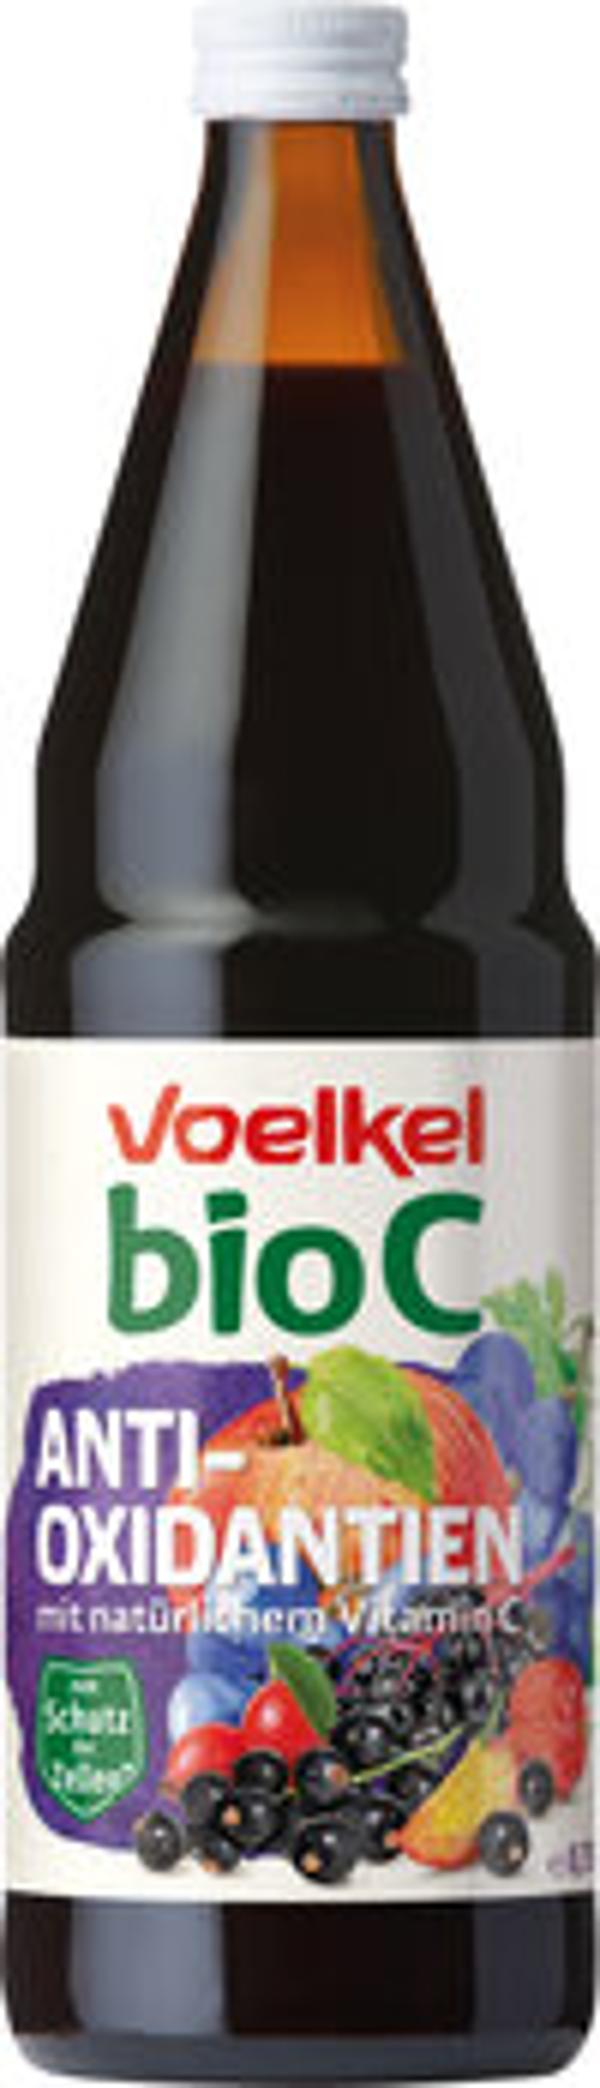 Produktfoto zu BioC Antioxidantien Saft 0,75l